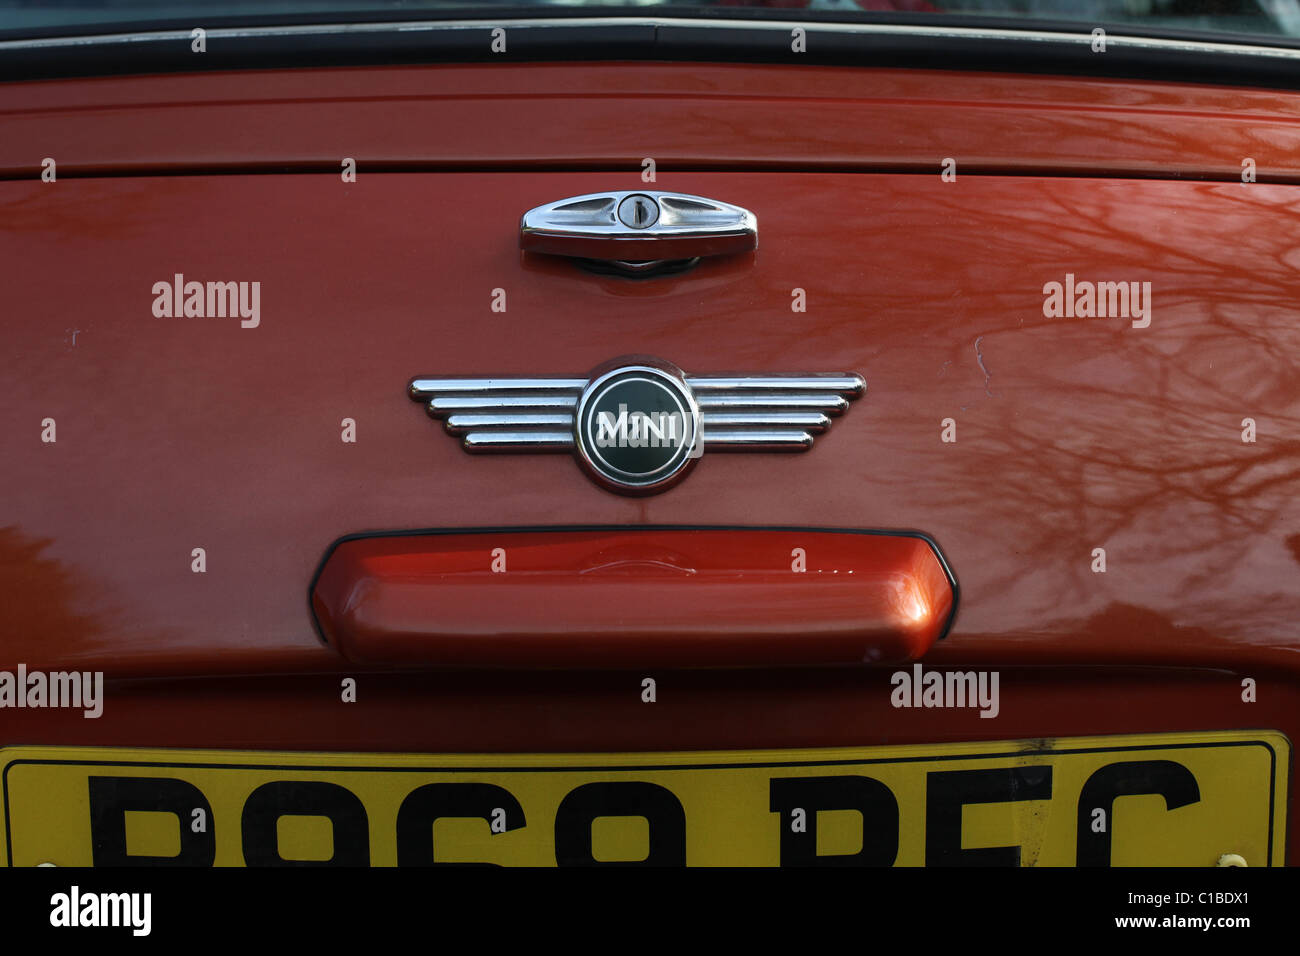 Dettaglio di un classico Rover Mini auto Foto Stock